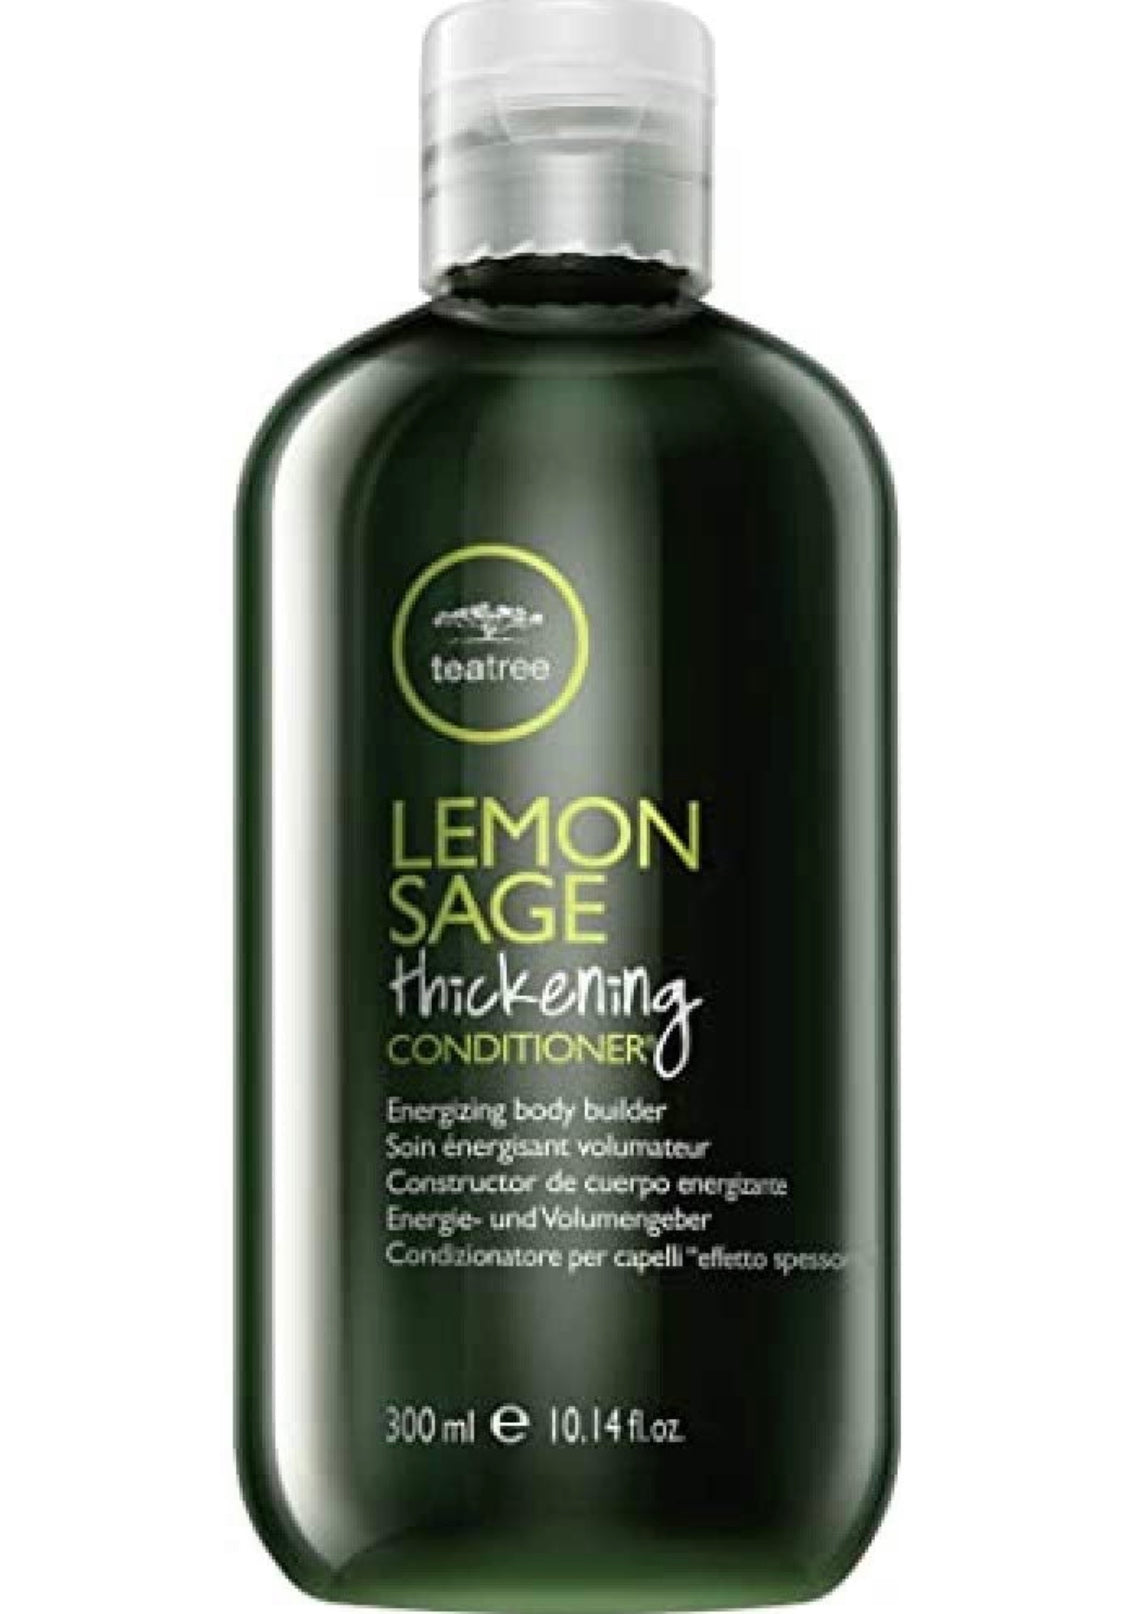 TeaTree - Lemon sage thickening conditioner 10.14 fl. oz./ 300 ml